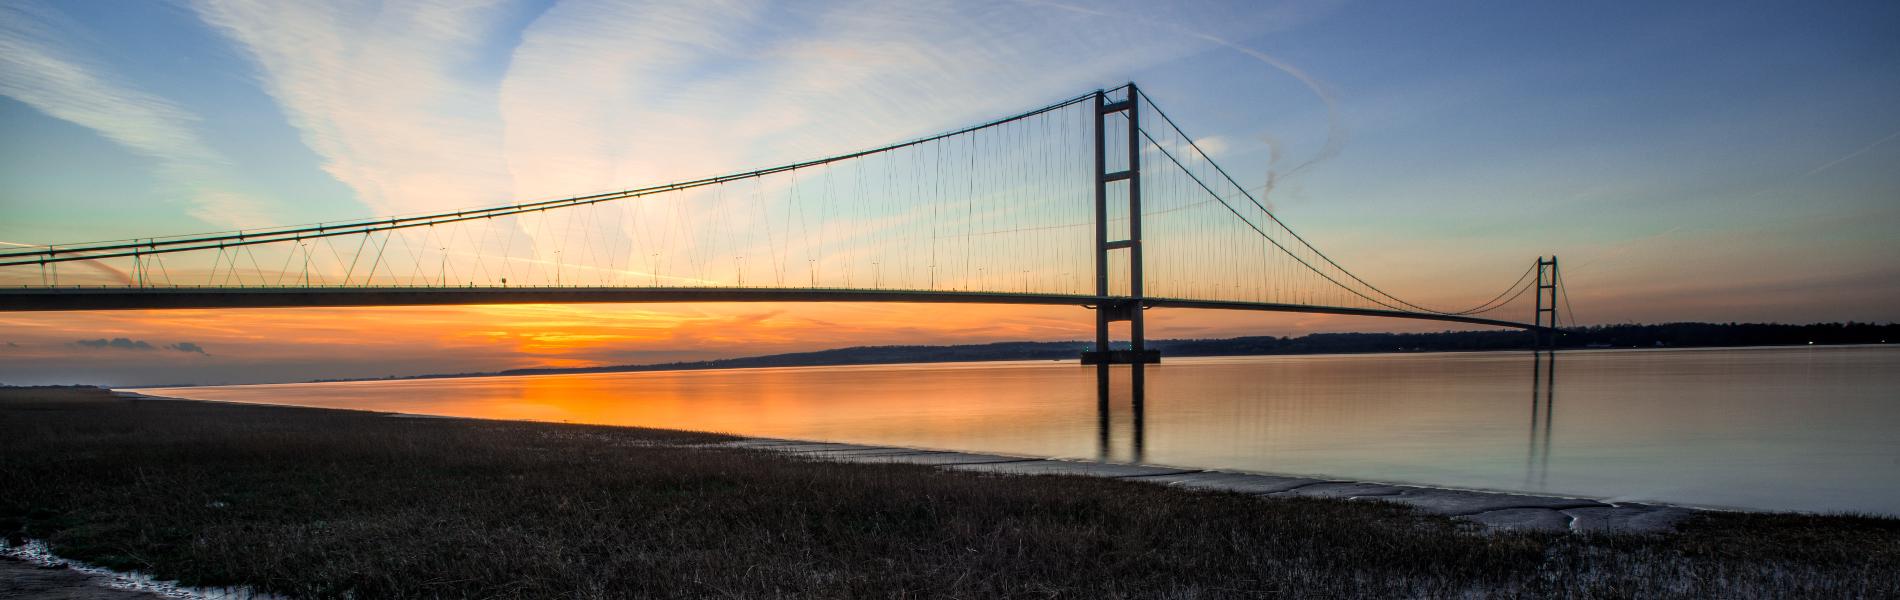 humber-bridge-sunset